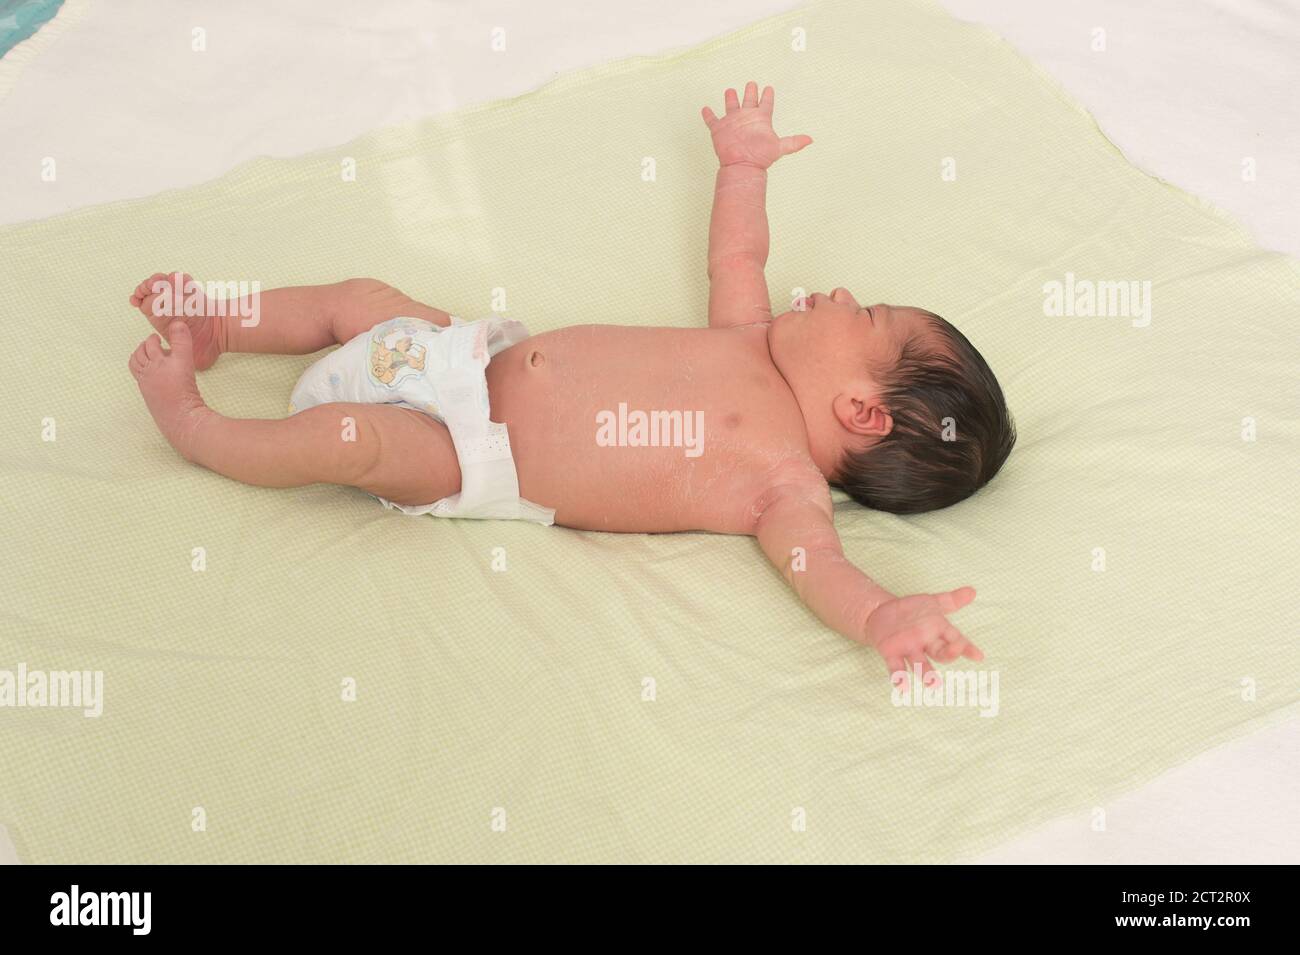 Niño recién nacido de 1 semanas en pañal en la espalda reflejo de sobresalto Reflex de Moro pelando la piel escamosa típico del recién nacido Foto de stock